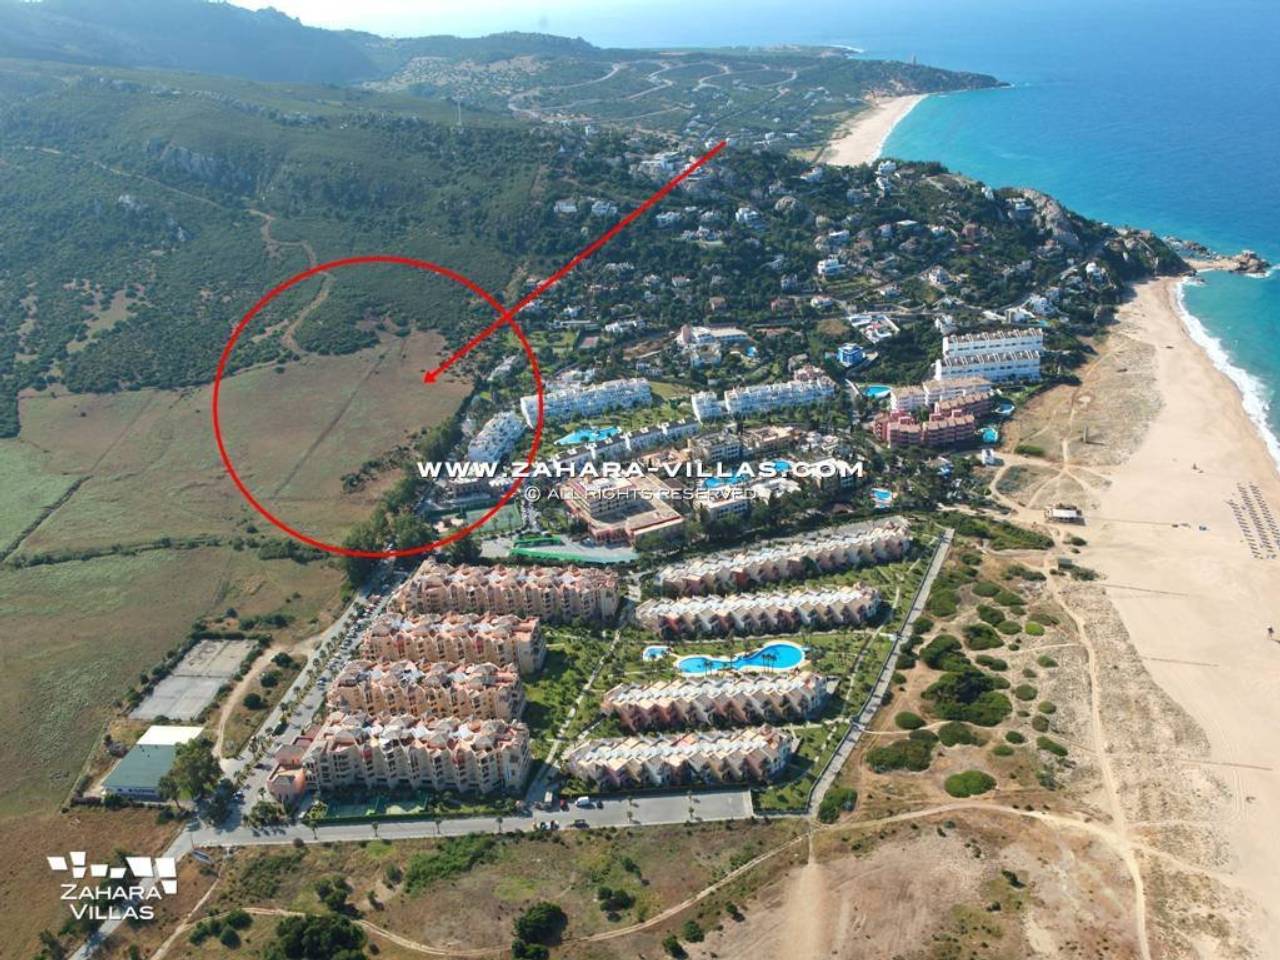 Imagen 5 de Grundstück in einem neuen Wohngebiet mit Blick auf das Meer und den zukünftigen Golfplatz